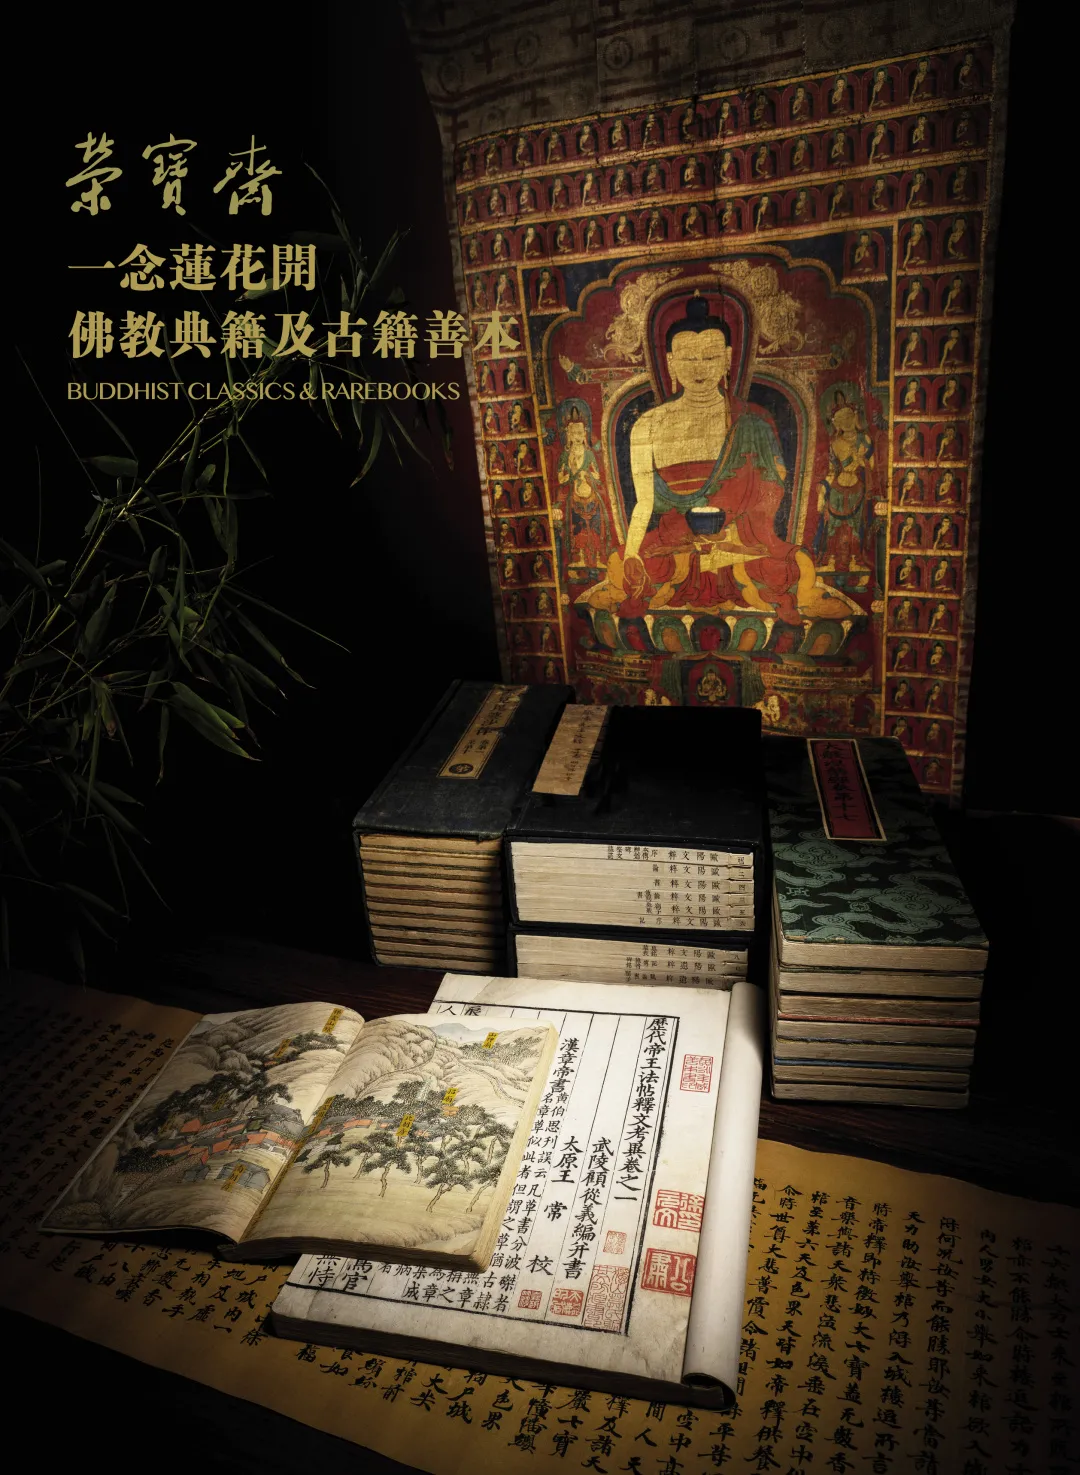 21秋季艺术品拍卖会将于今日于北京富力万丽酒店开启，恭迎大驾